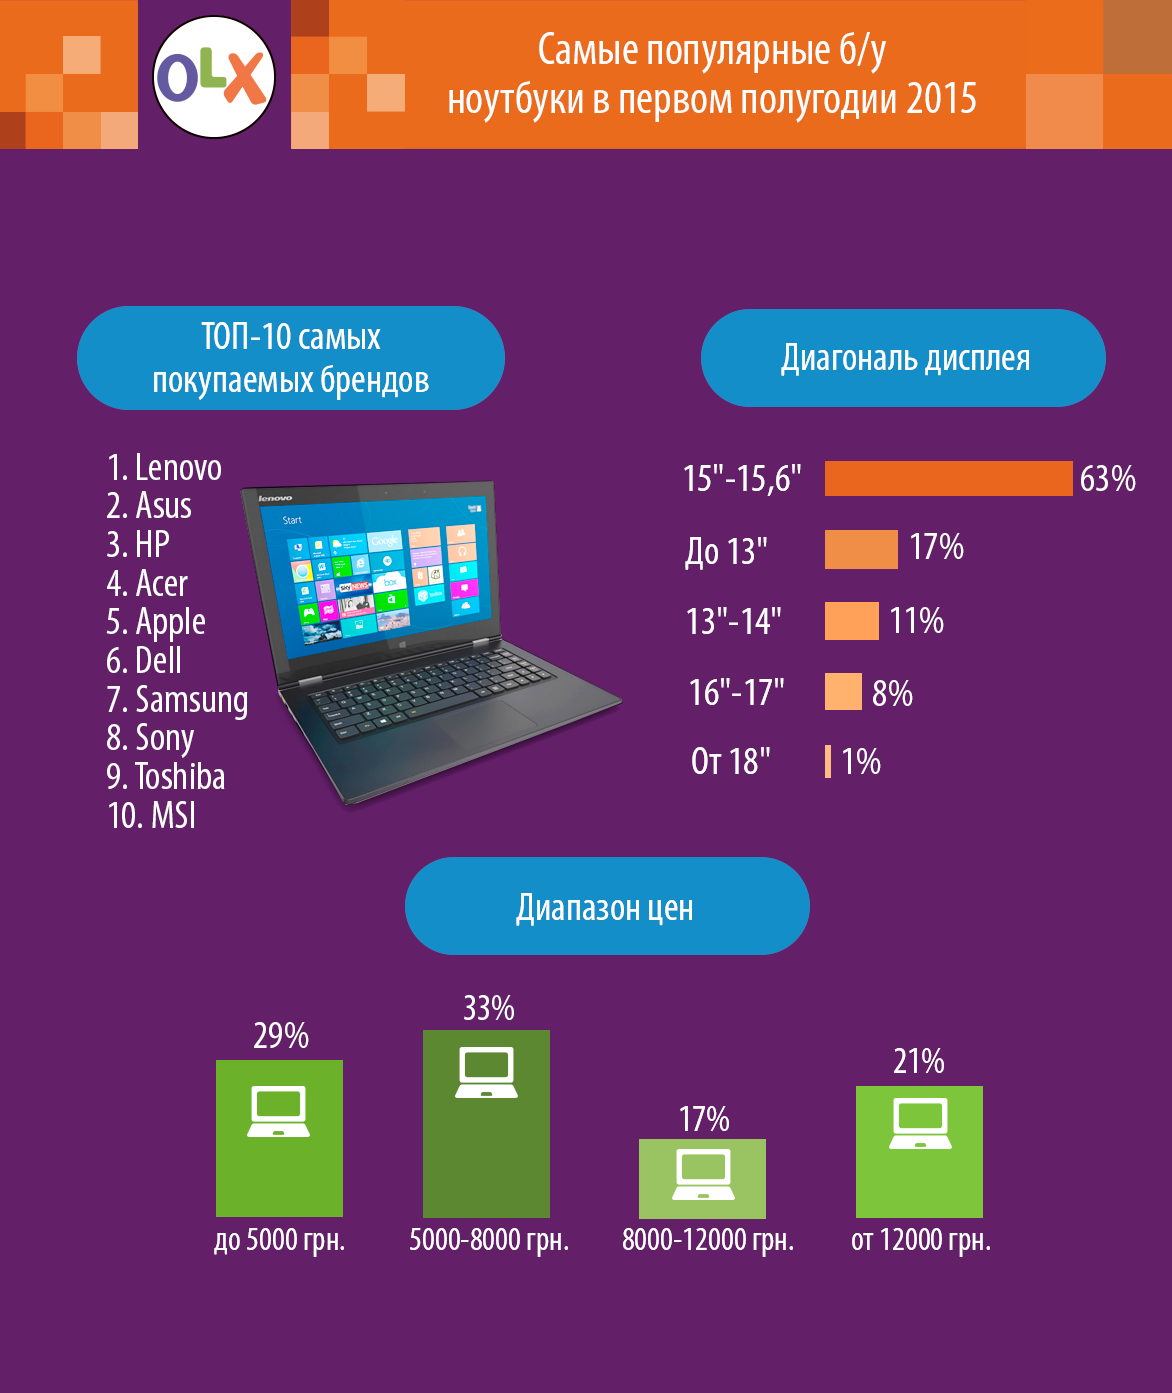 Світ: Какие б/у ноутбуки интернет-пользователи чаще всего покупали в 2015 году